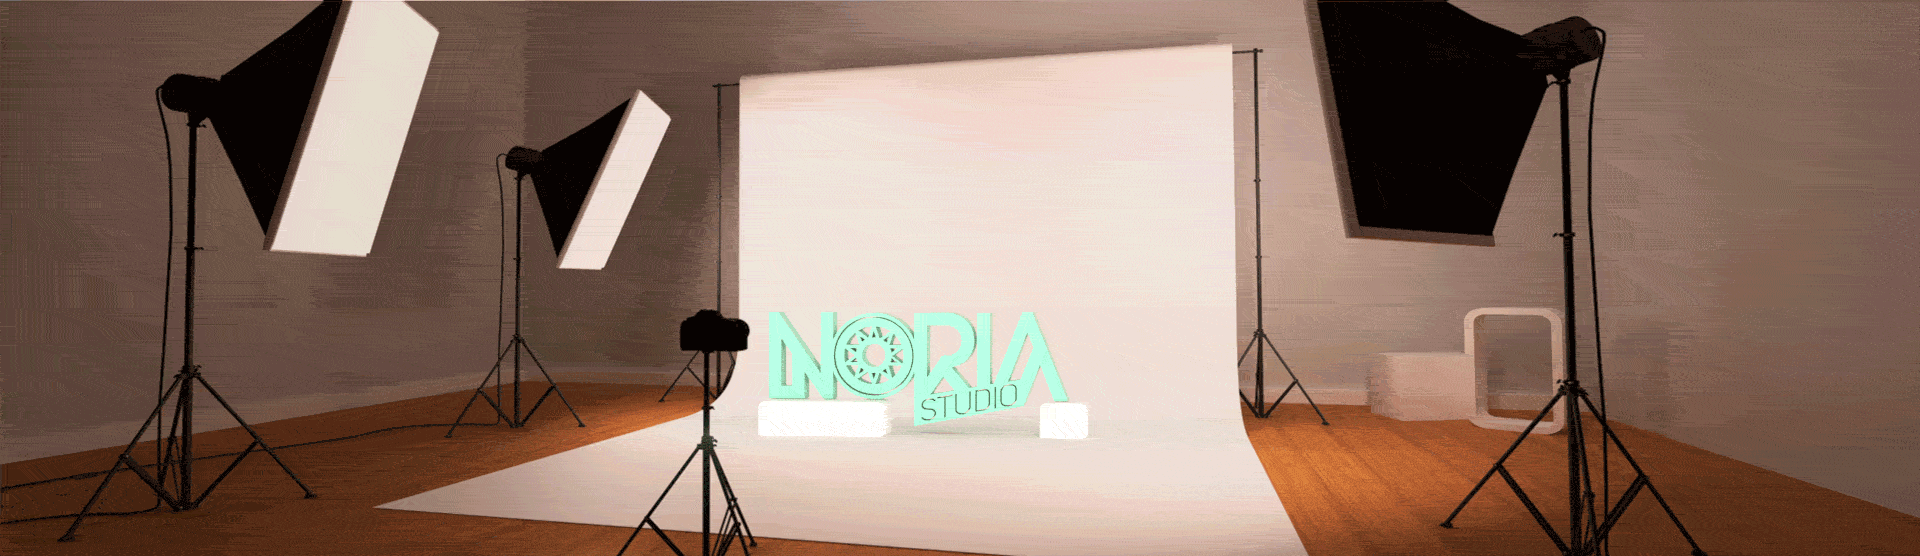 fotografía noria studio